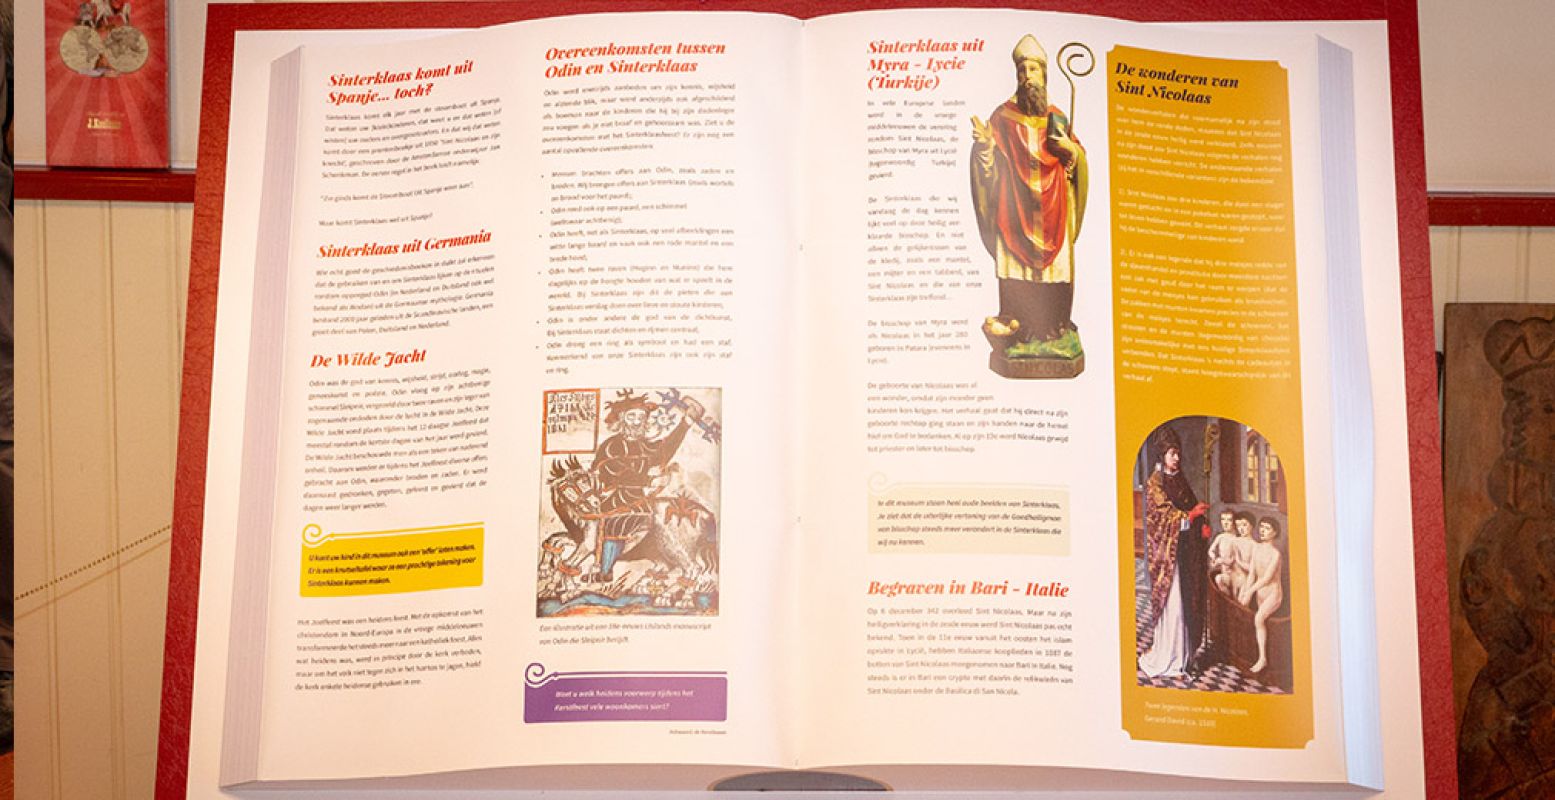 Het verhaal over het Sinterklaasfeest in grote boeken. Foto: Nationaal Sinterklaasmuseum